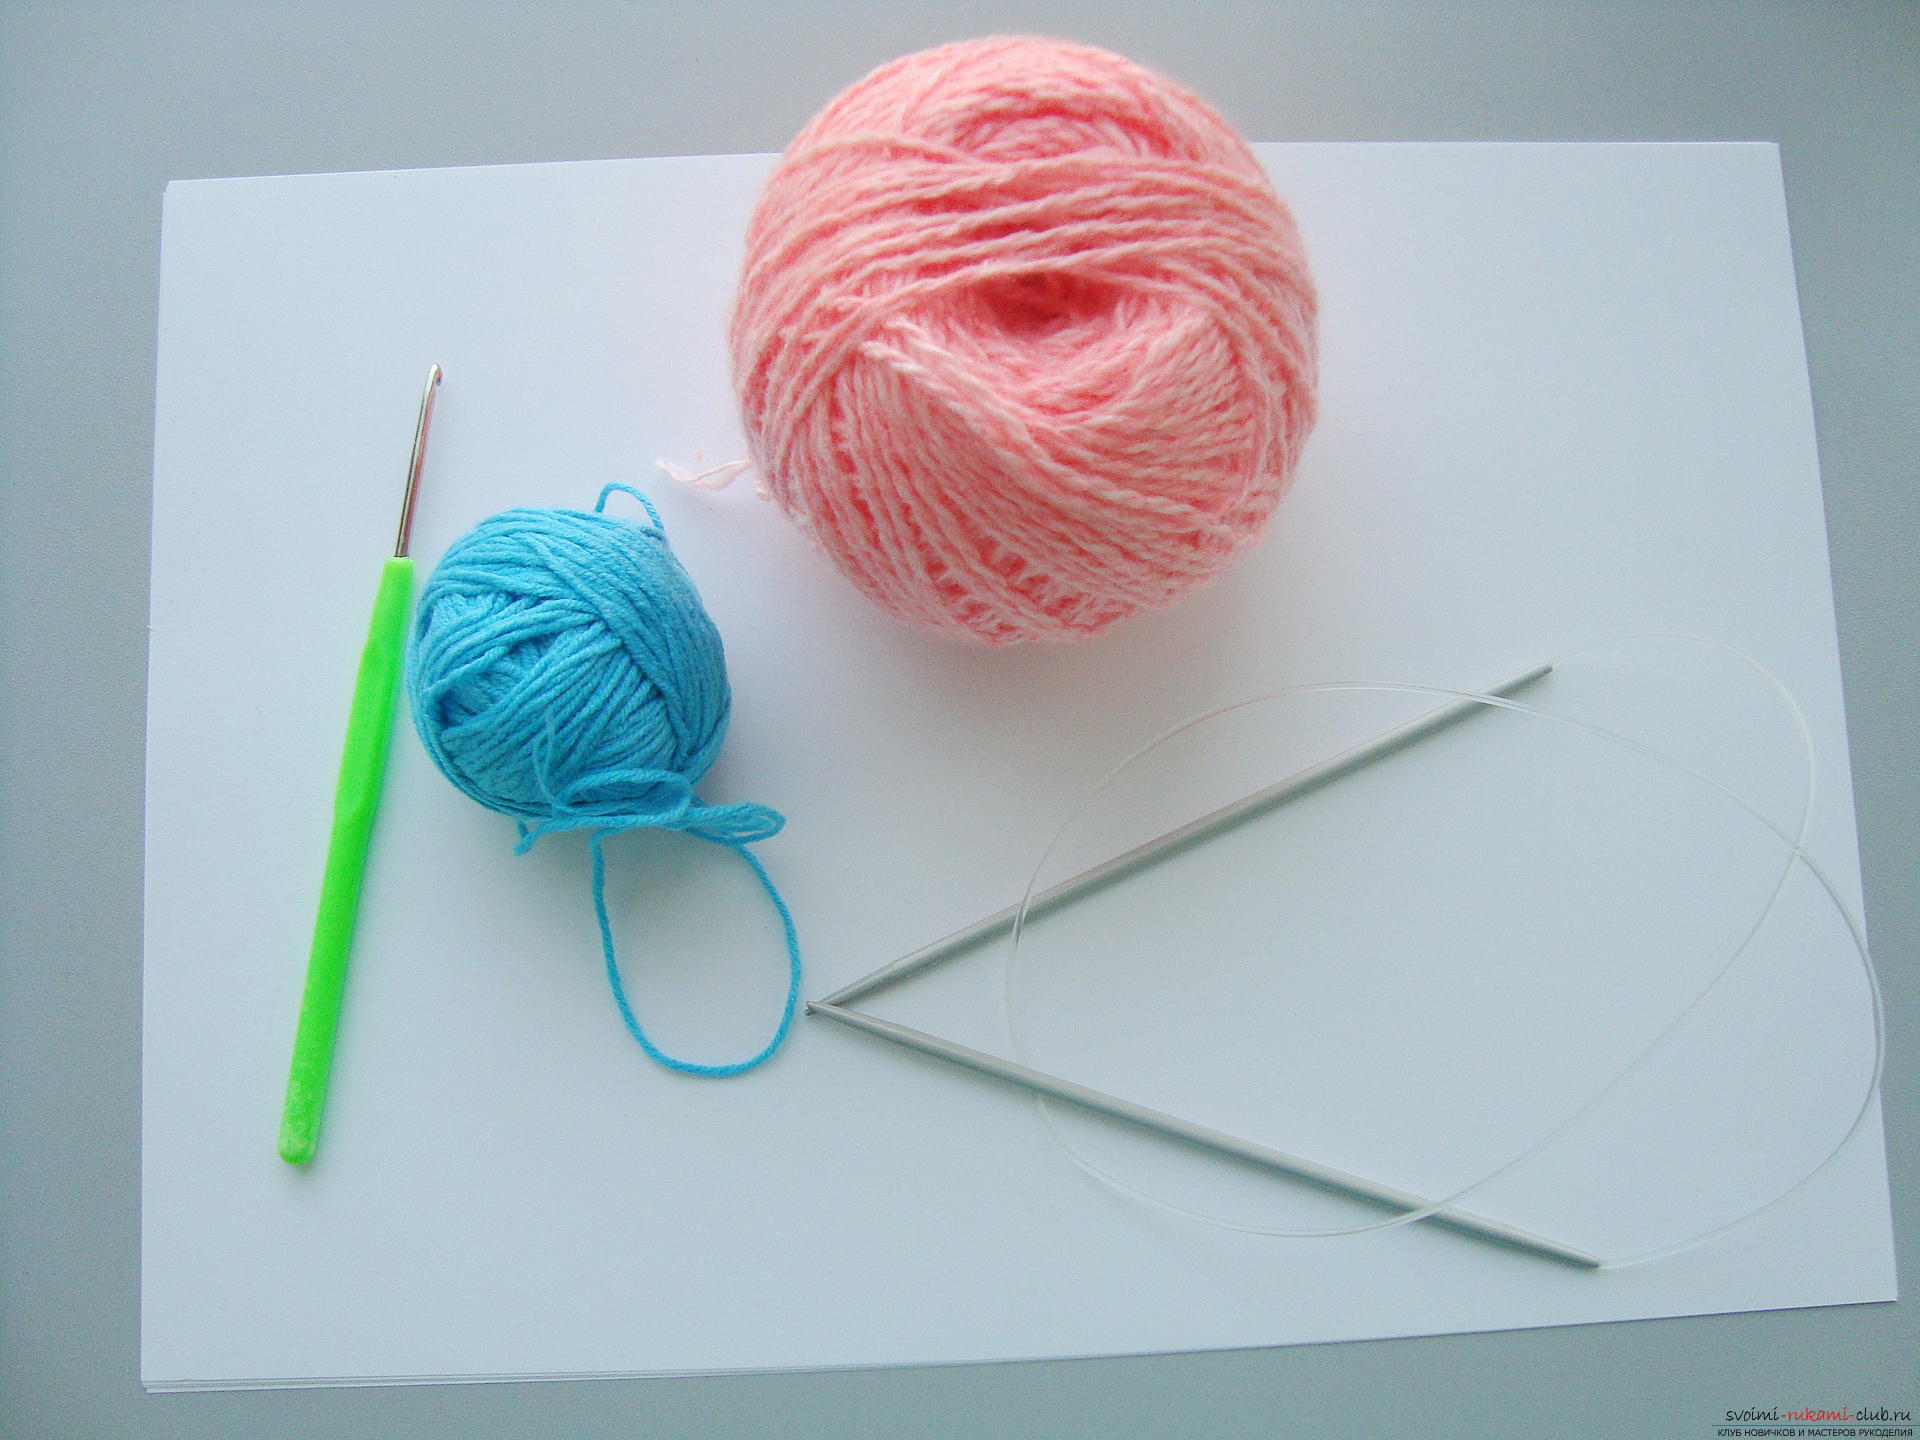 Photo-instruction on knitting needles-napkins under the hot. Photo # 2